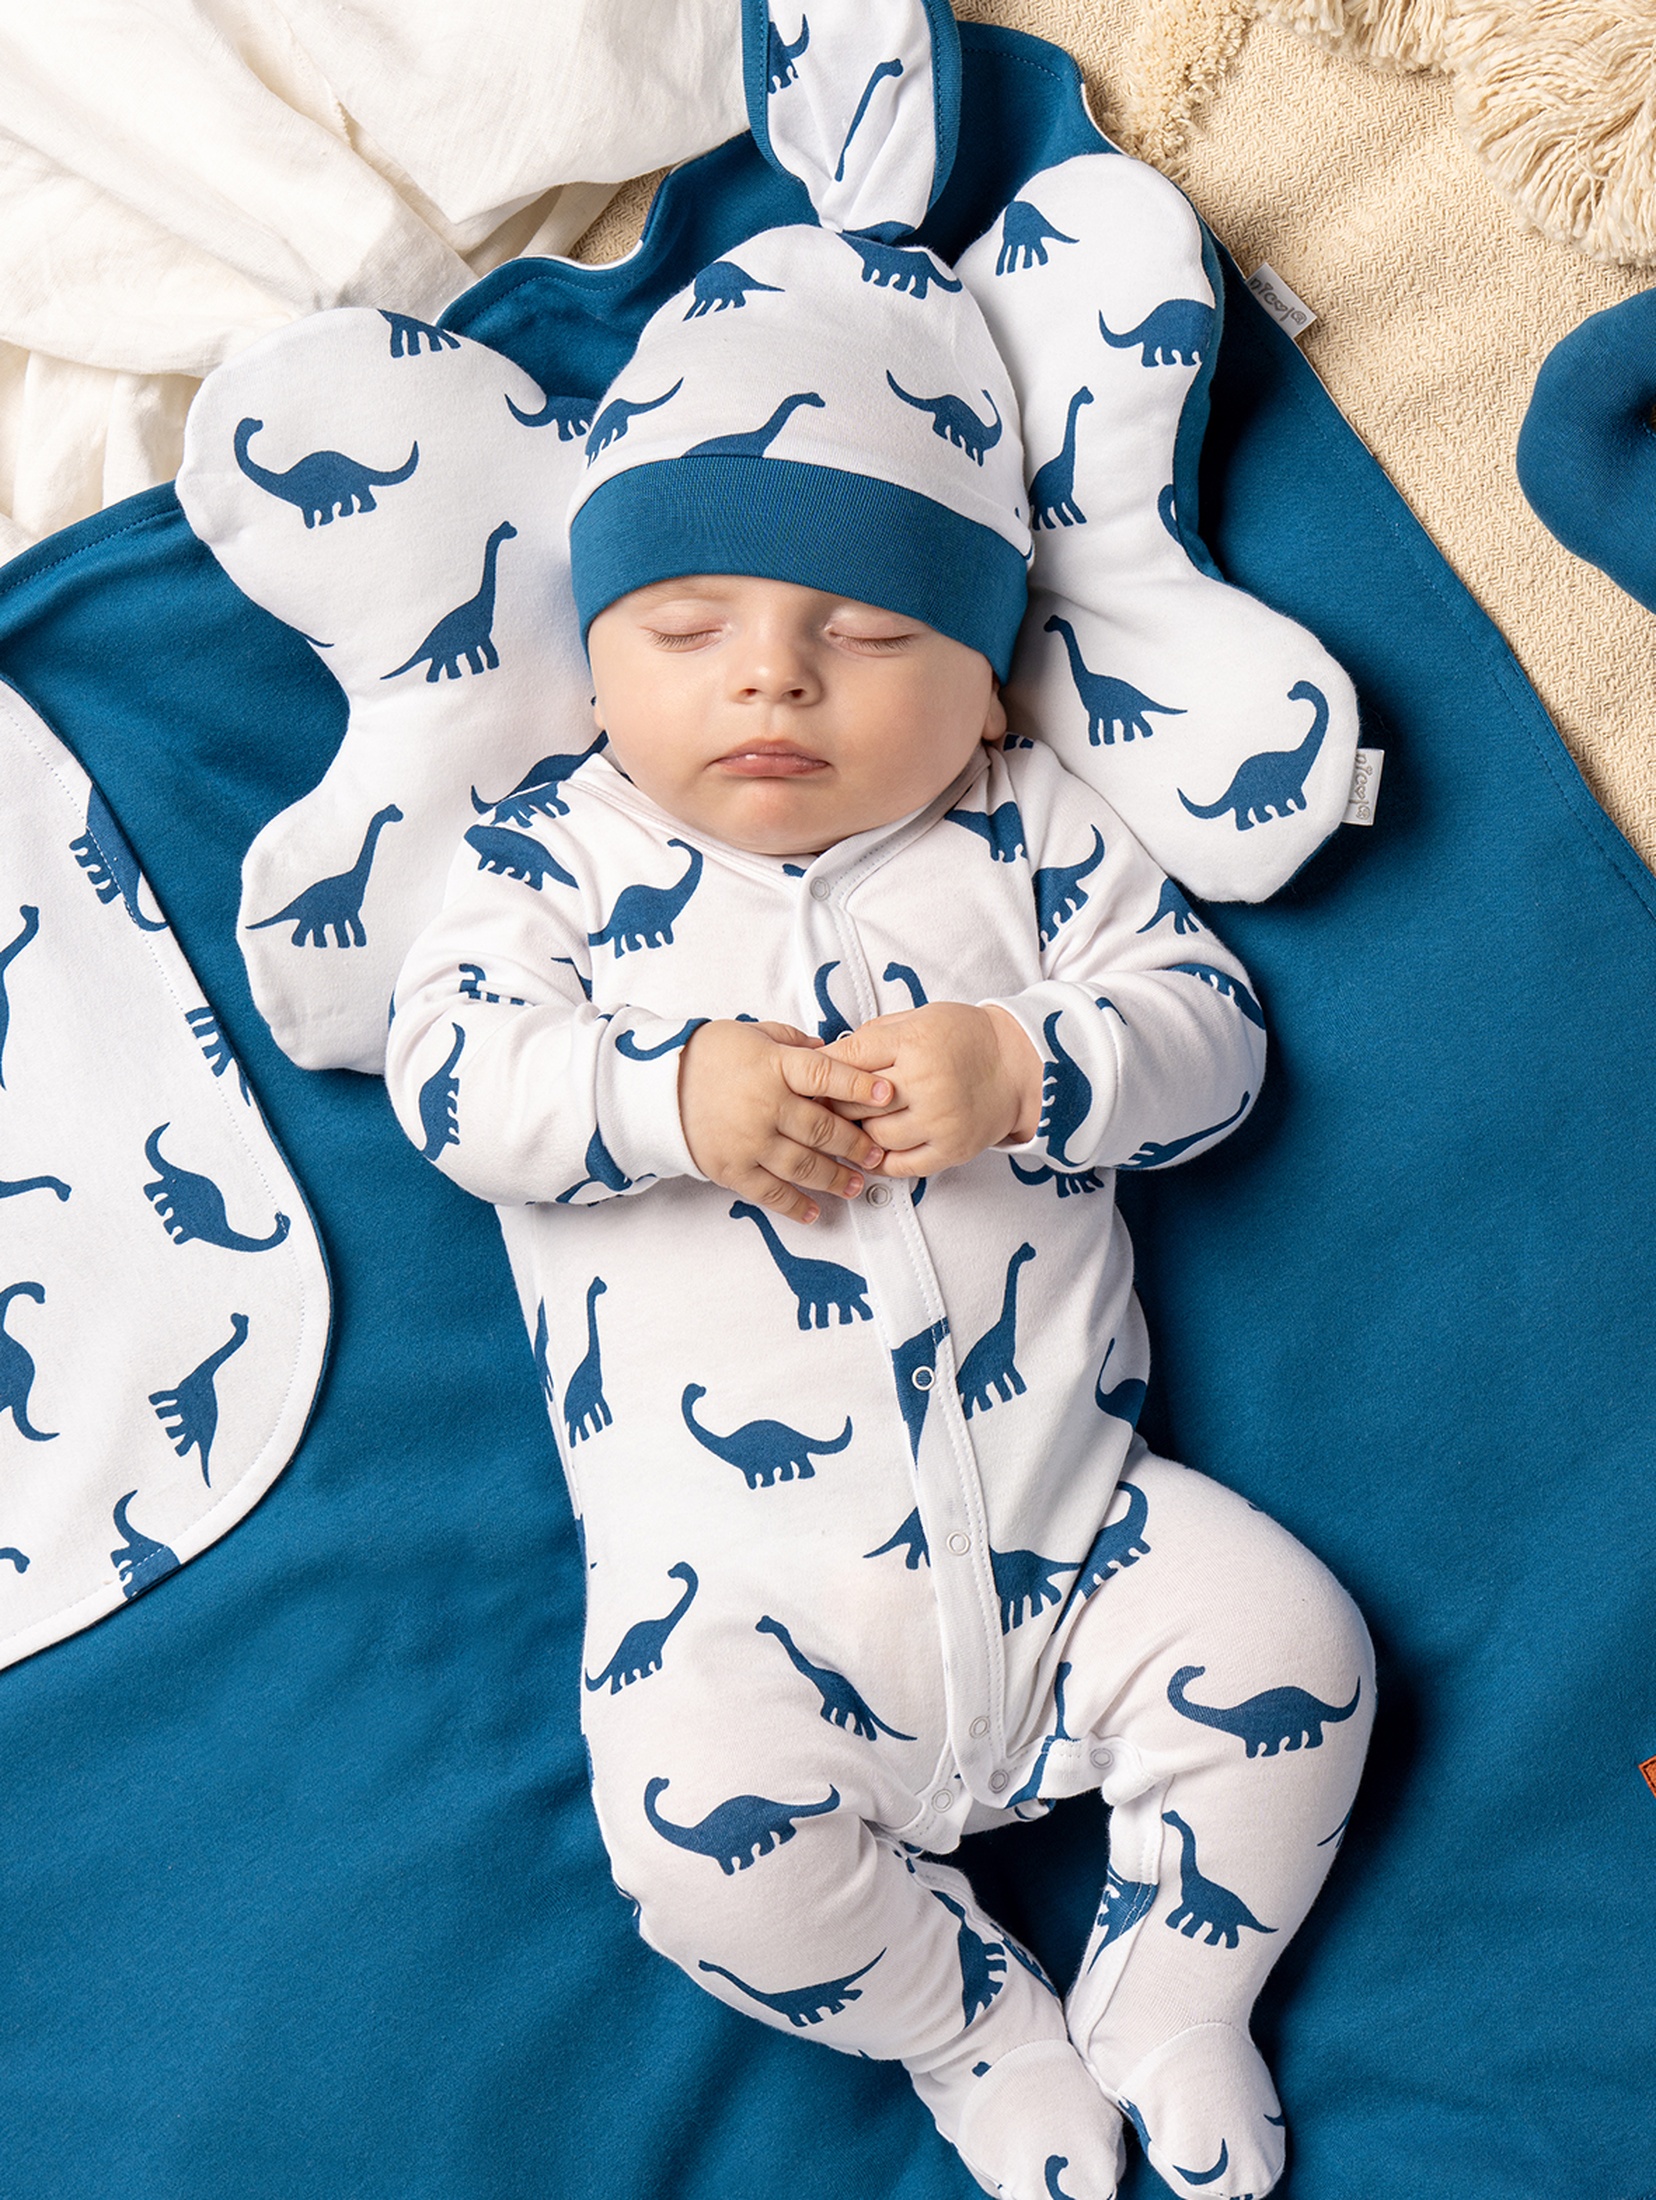 Bawełniana dziecięca poduszka/ motylek - niebieskie dinozaury